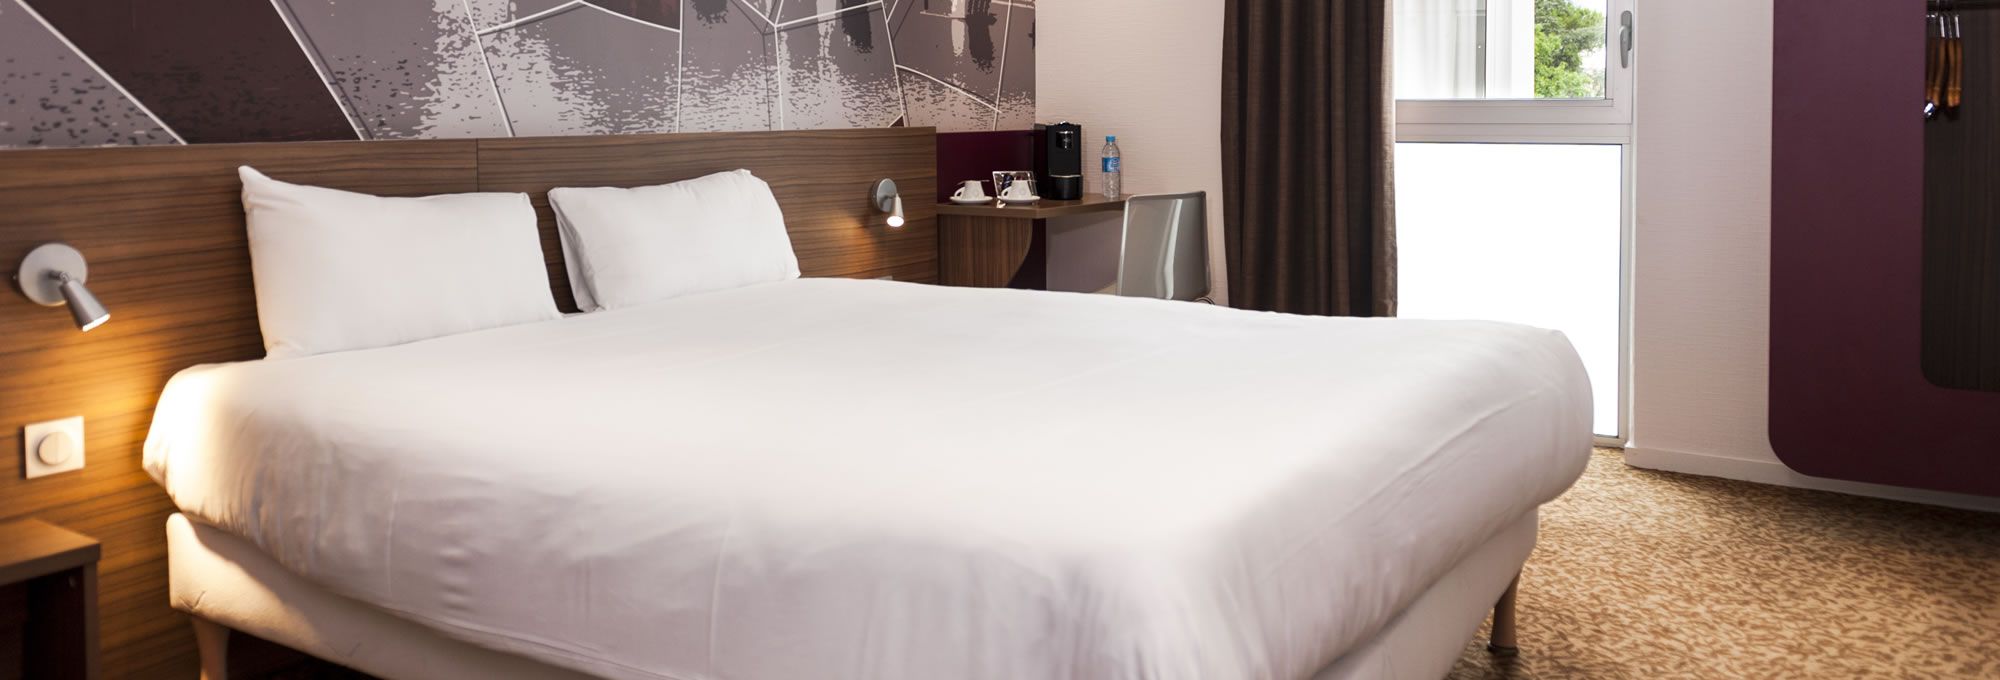 Découvrez nos chambres tout confort au Brit Hotel Toulouse Colomiers !